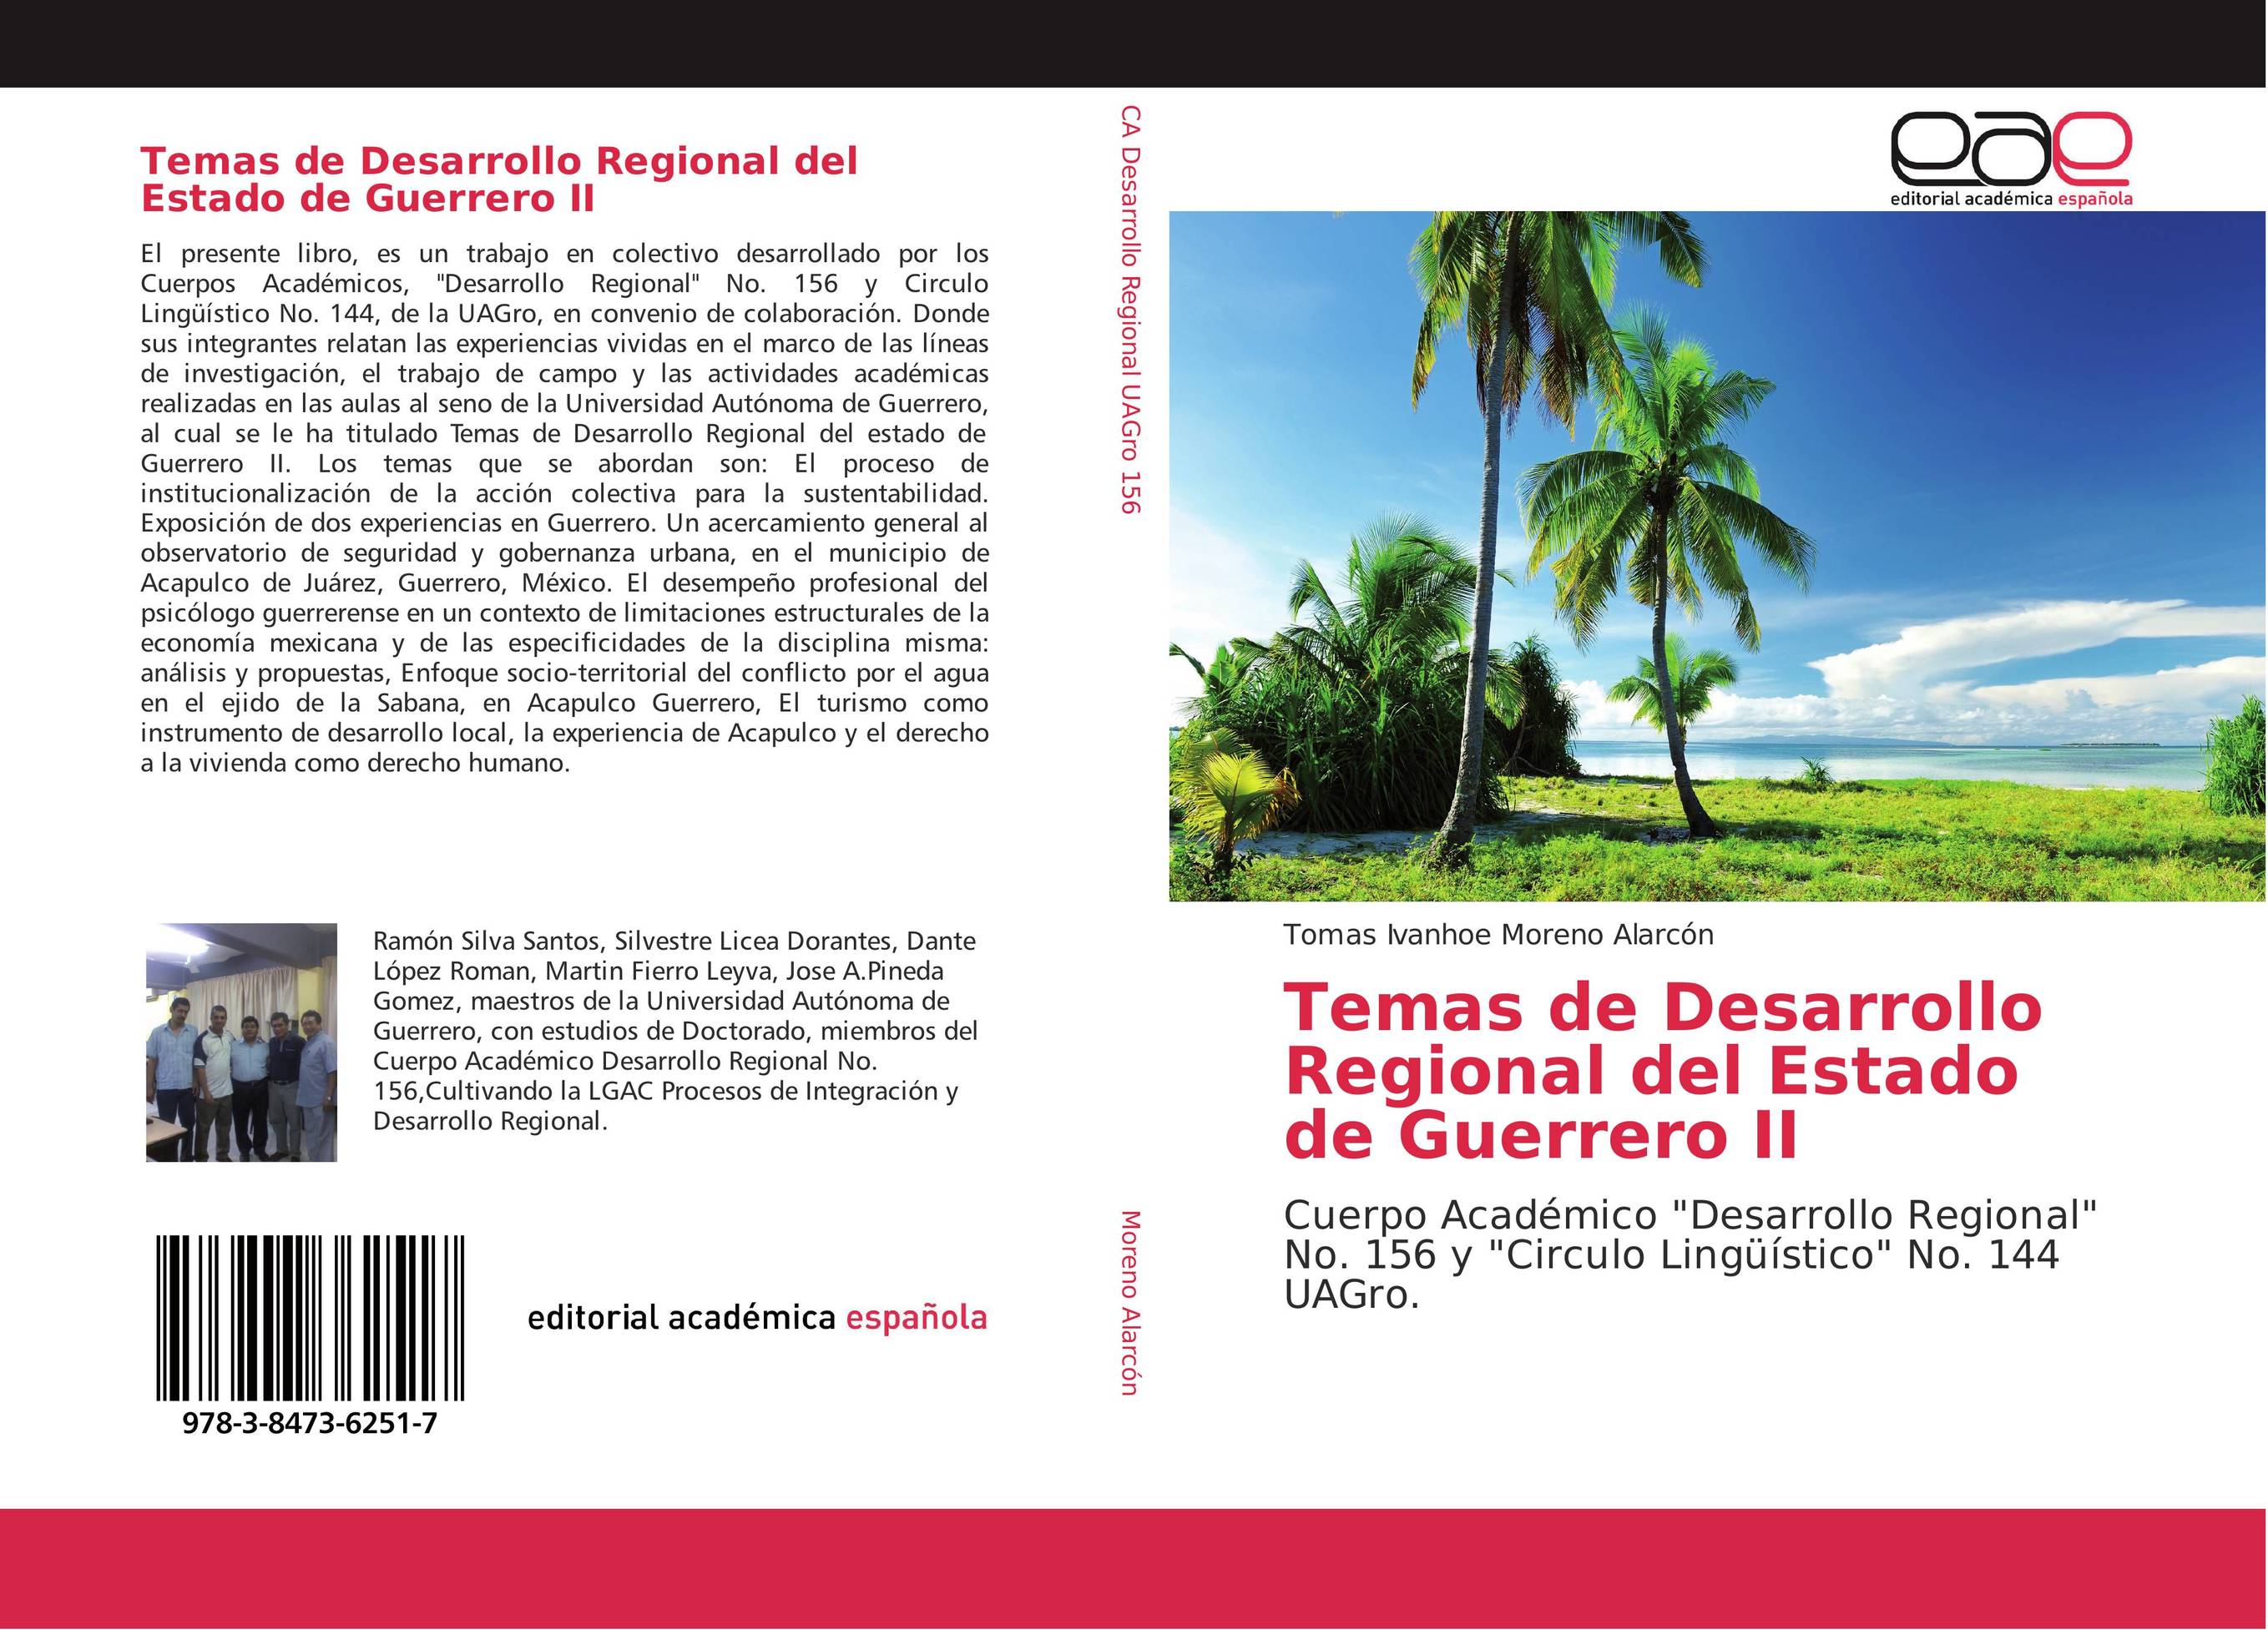 Temas de Desarrollo Regional del Estado de Guerrero II